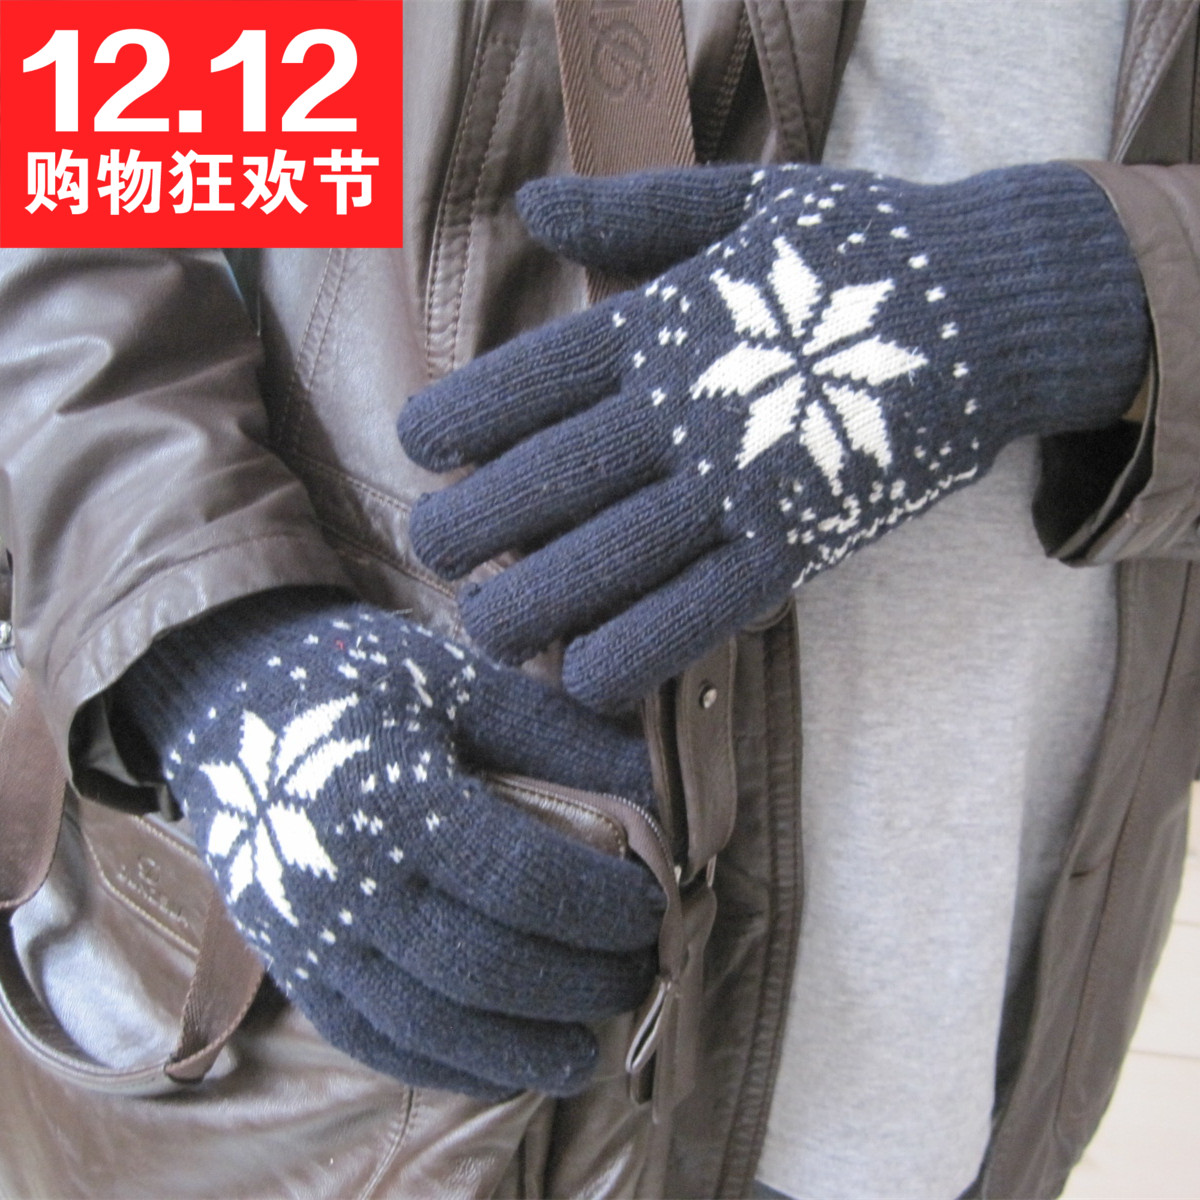 韩版冬季加厚保暖男士手套 双层手套男 时尚雪花针织毛线手套批发折扣优惠信息